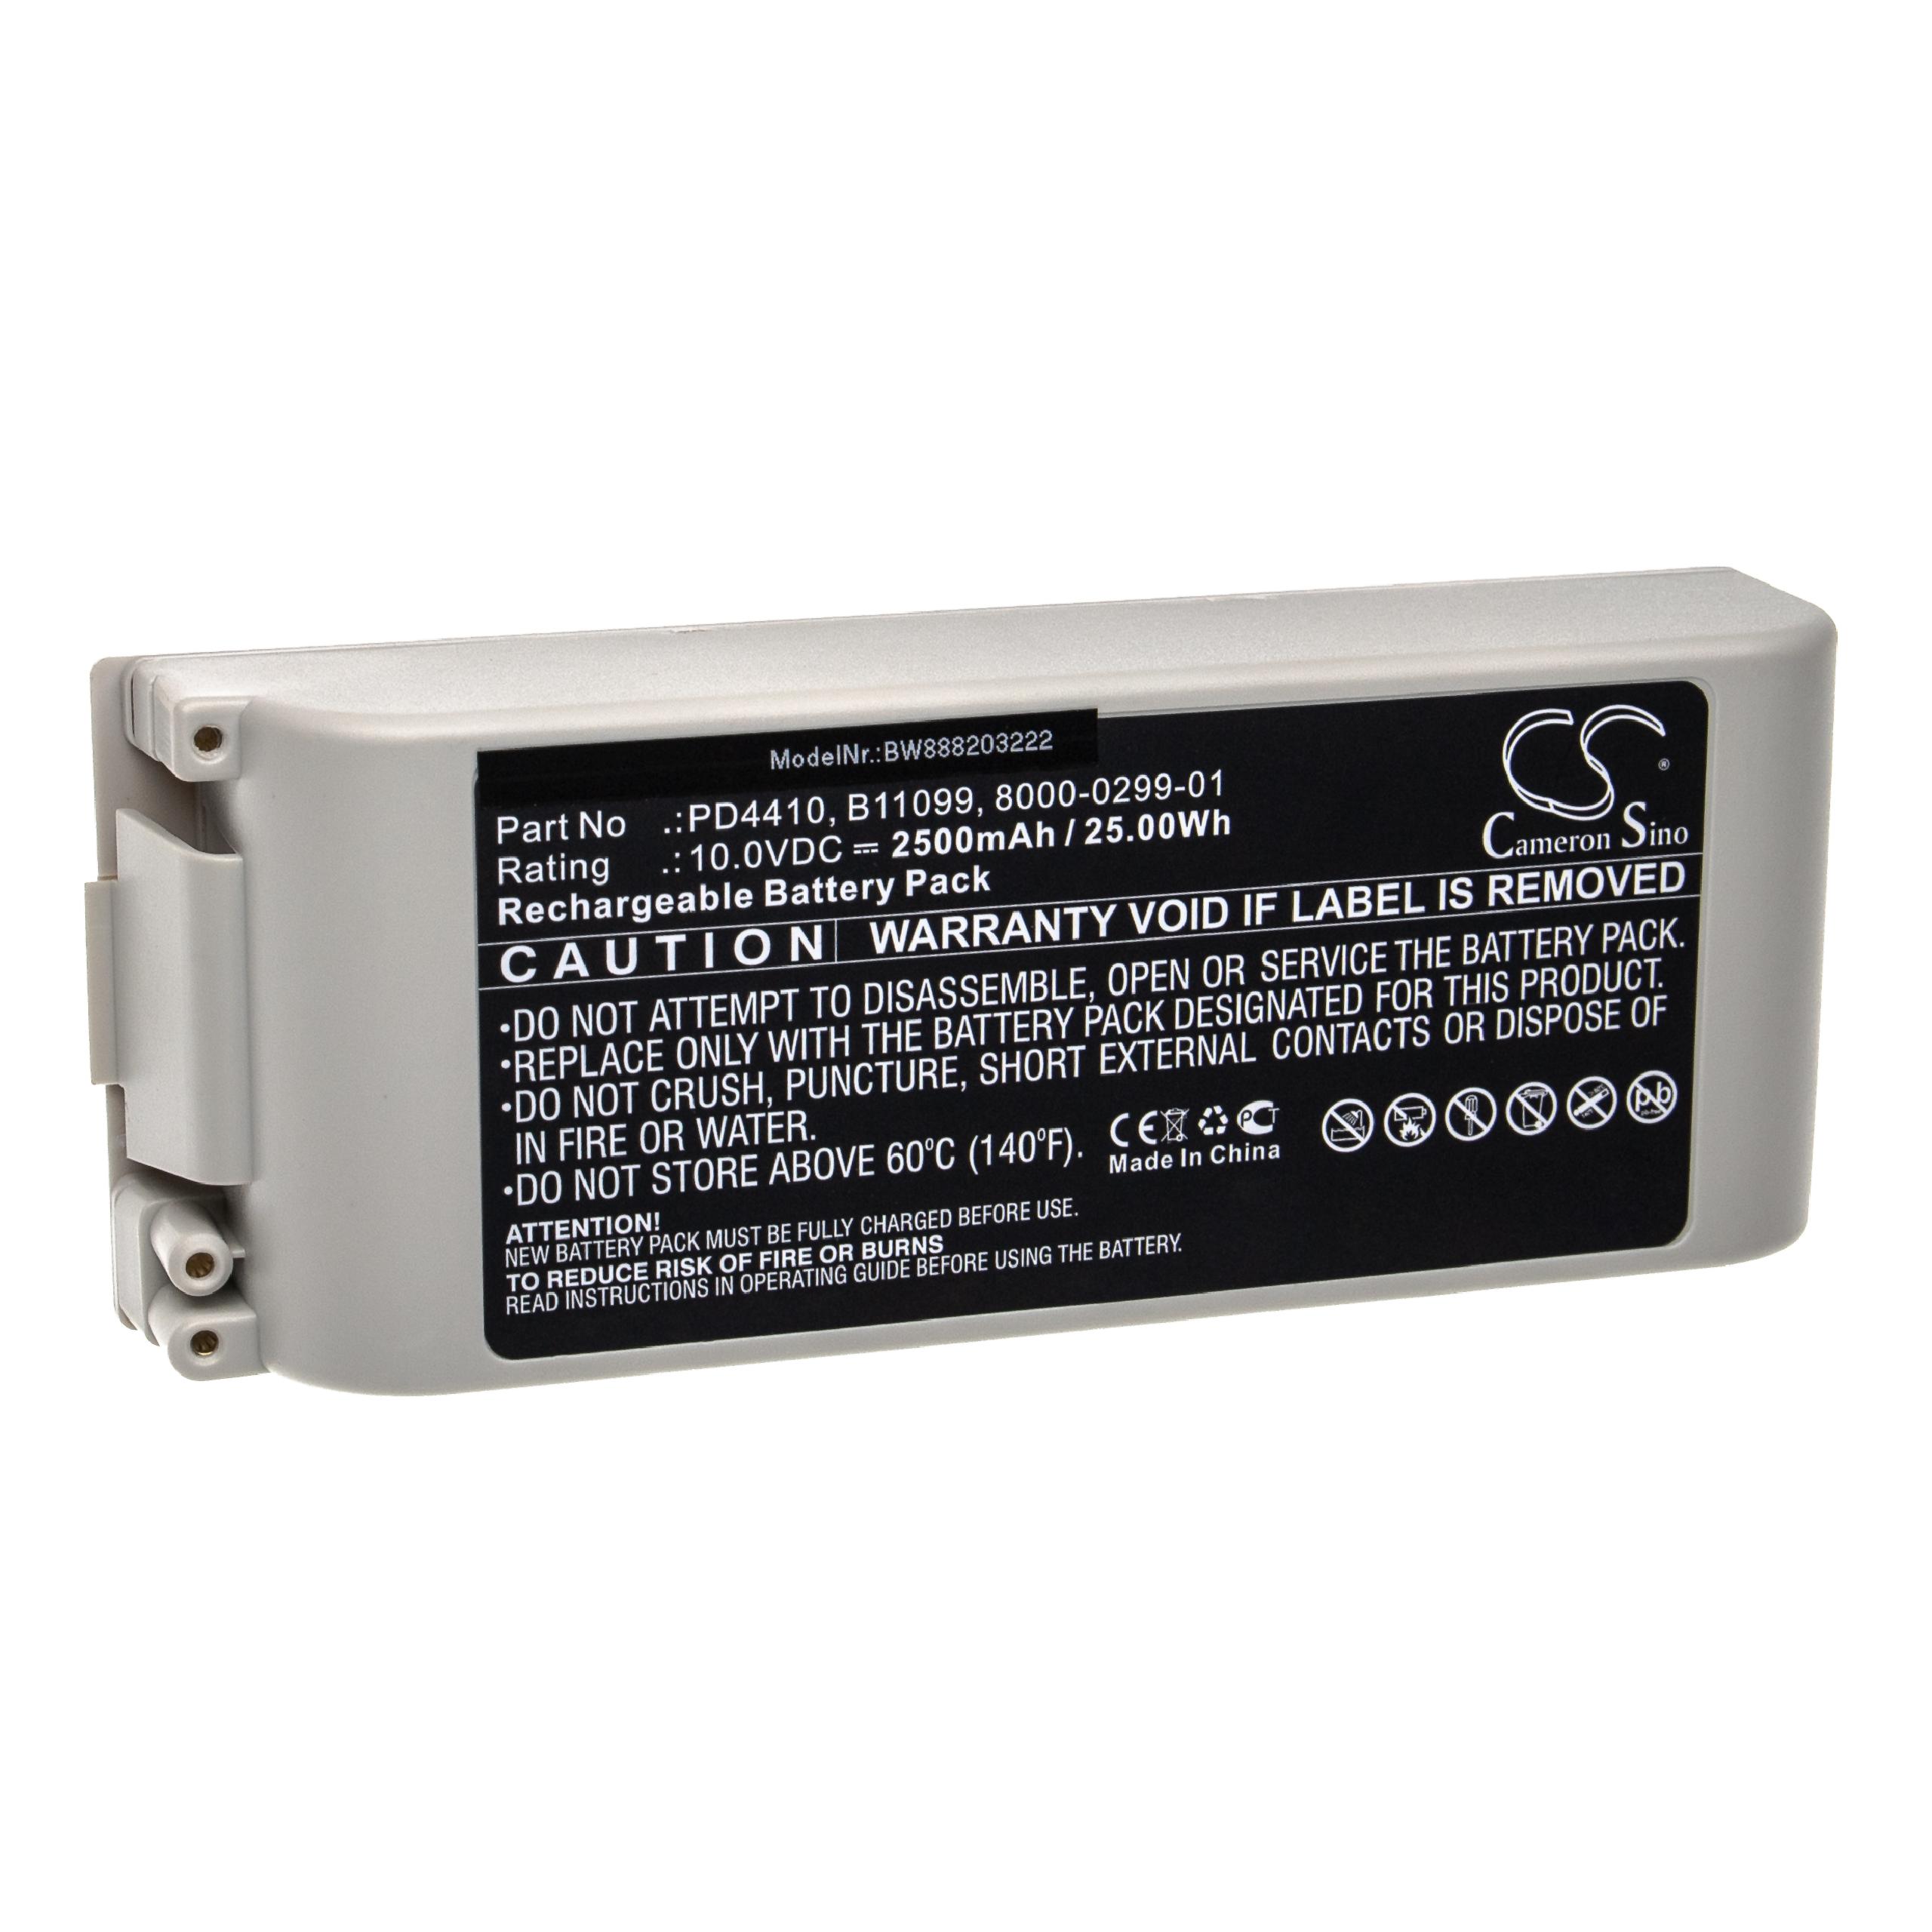 Batterie remplace ZOLL 8000-0299-01, B11099, 8000-0299-10, 110087 pour appareil médical - 2500mAh 10V AGM